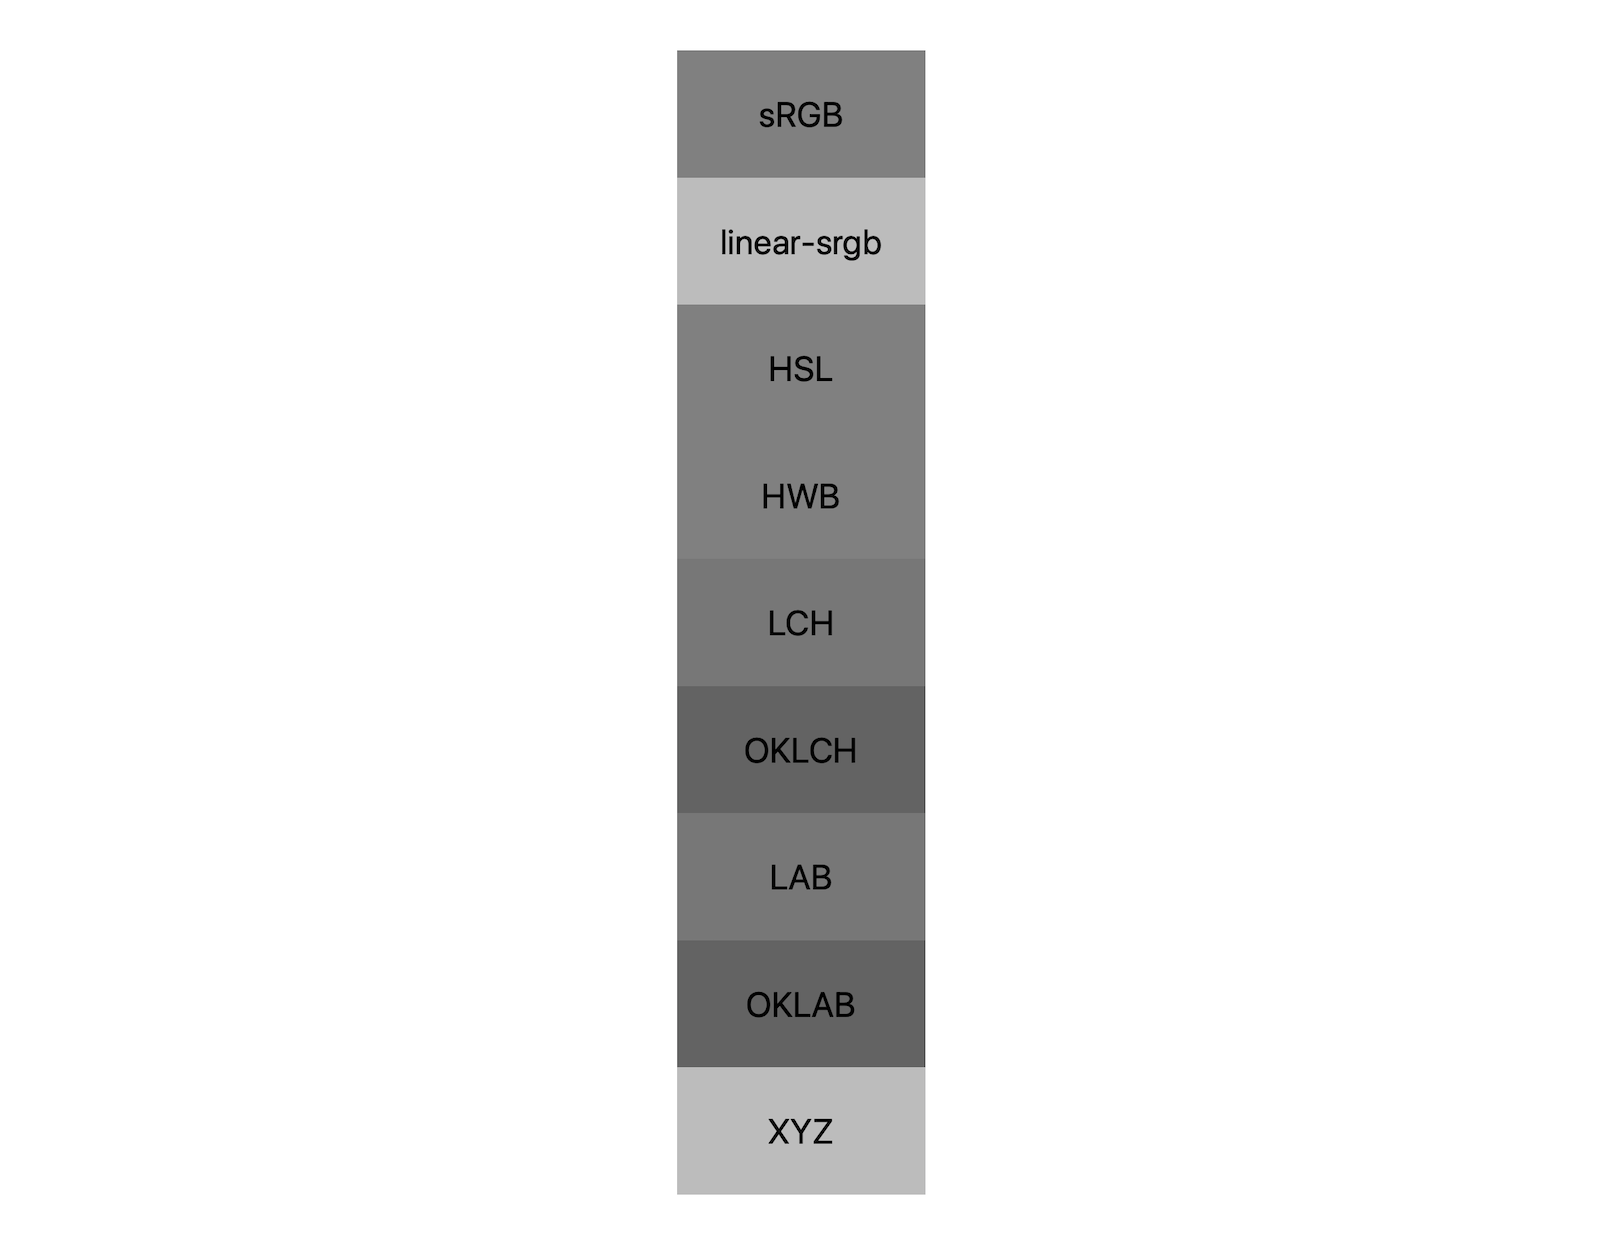 ב-7 מרחבים צבעוניים (srgb, לינארי-srgb, lch, oklch, lab, oklab, xyz), בכל אחד מהם מוצגות תוצאות של שילוב שחור-לבן. מוצגים כ-5 גוונים שונים, וכך נראה שכל מרחב צבעים יתערבב בצורה שונה עם צבע אפור.